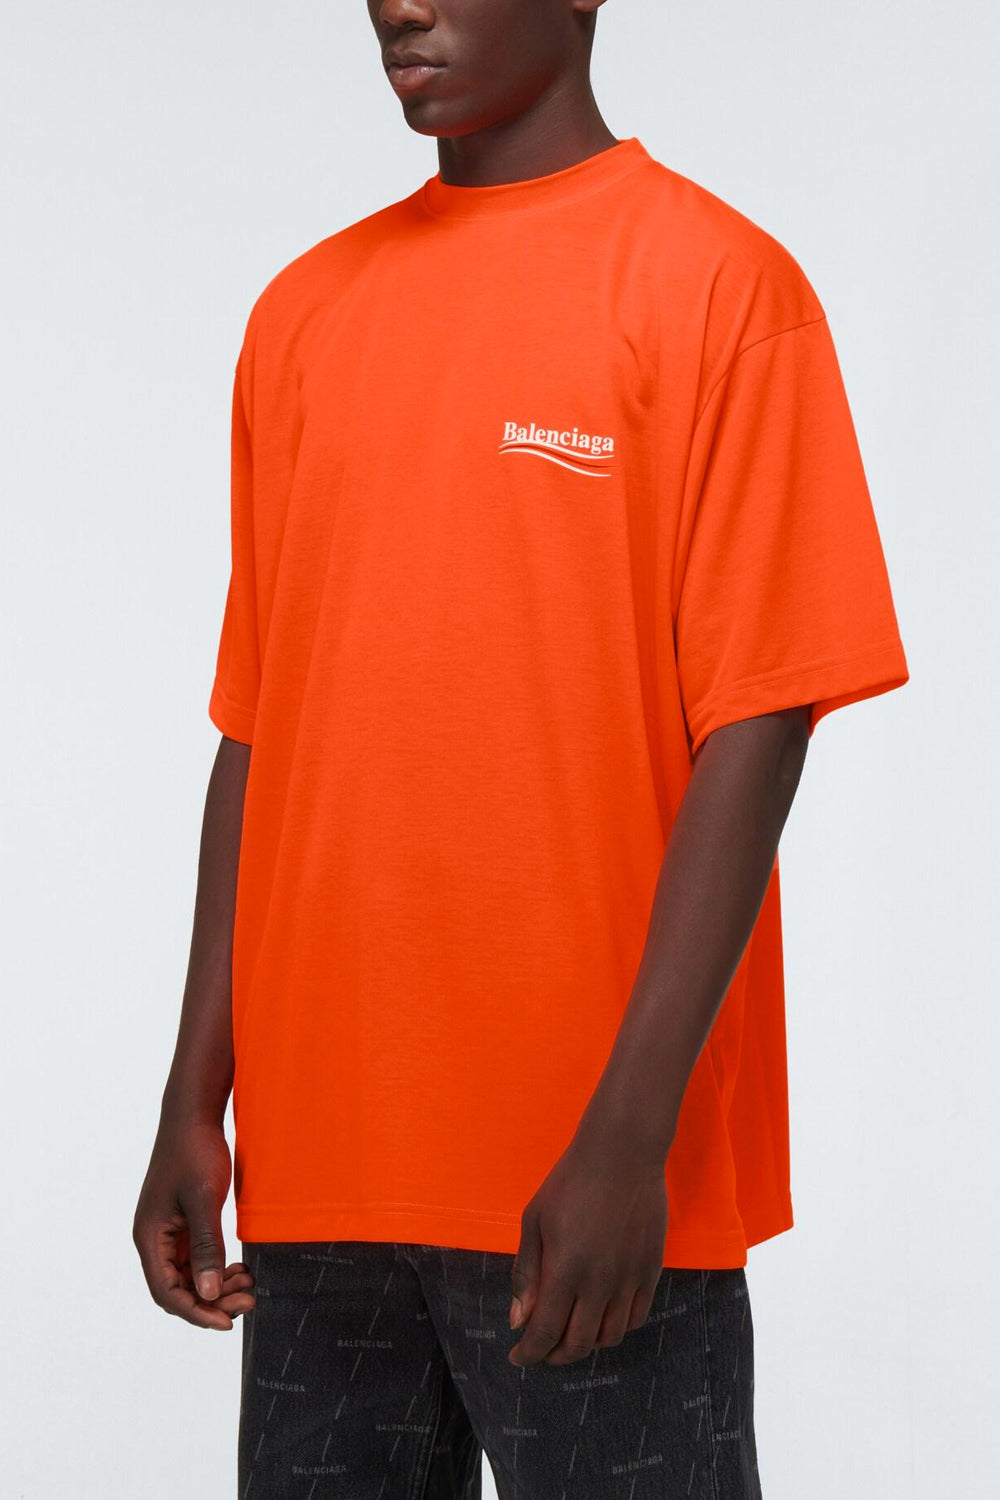 Balenciaga Men's Orange Political Campaign Large-fit T-shirt